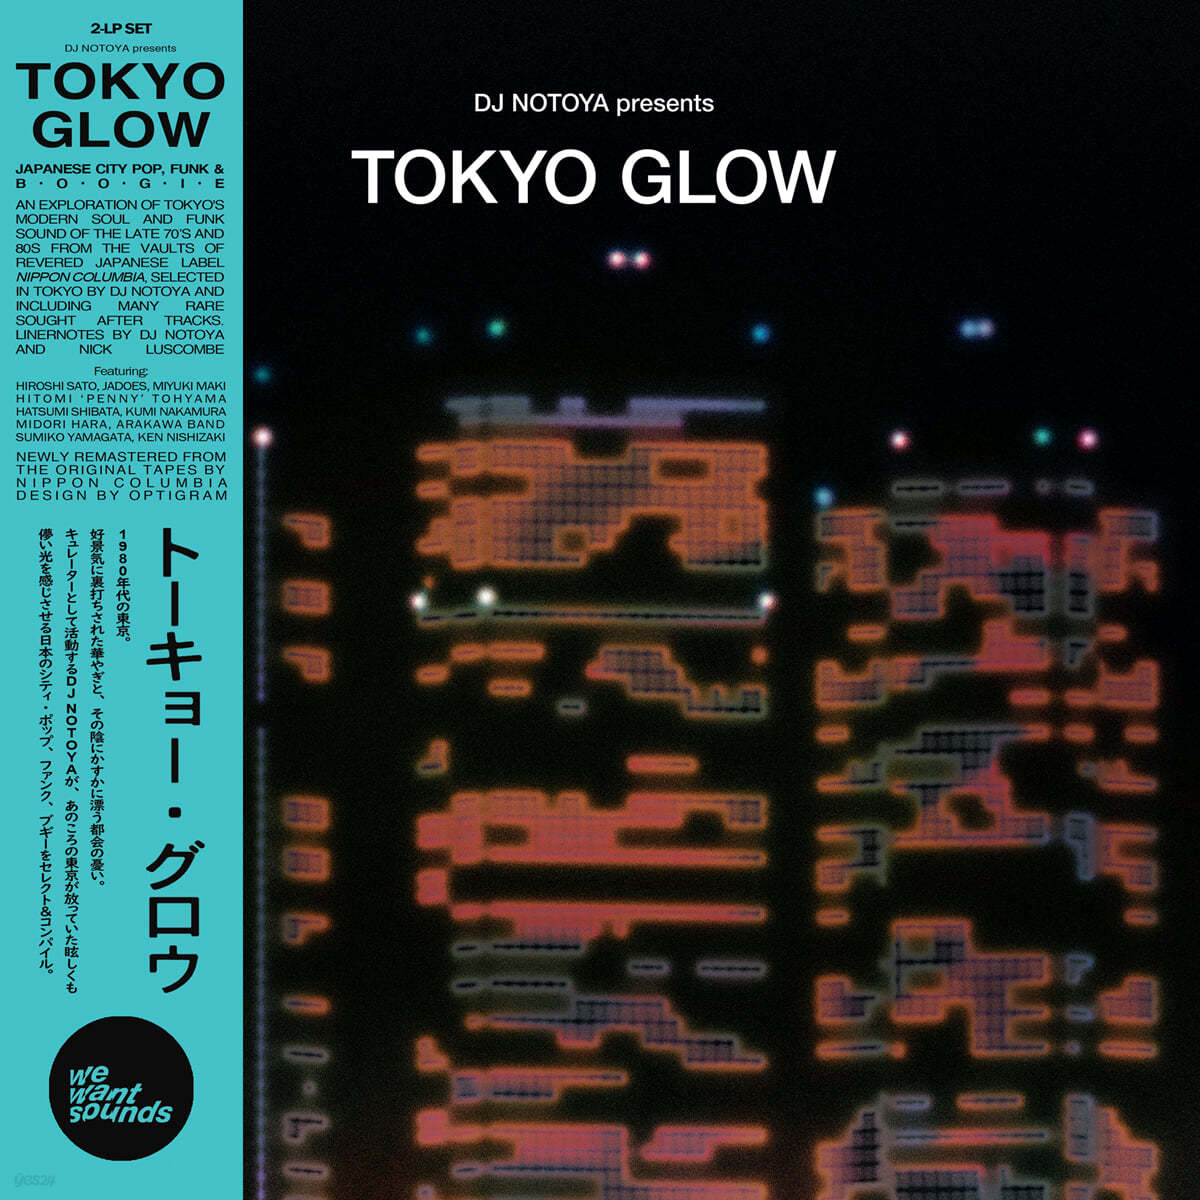 도쿄 글로우 - 시티팝, 모던 소울 모음집 (Tokyo Glow) [2LP] 